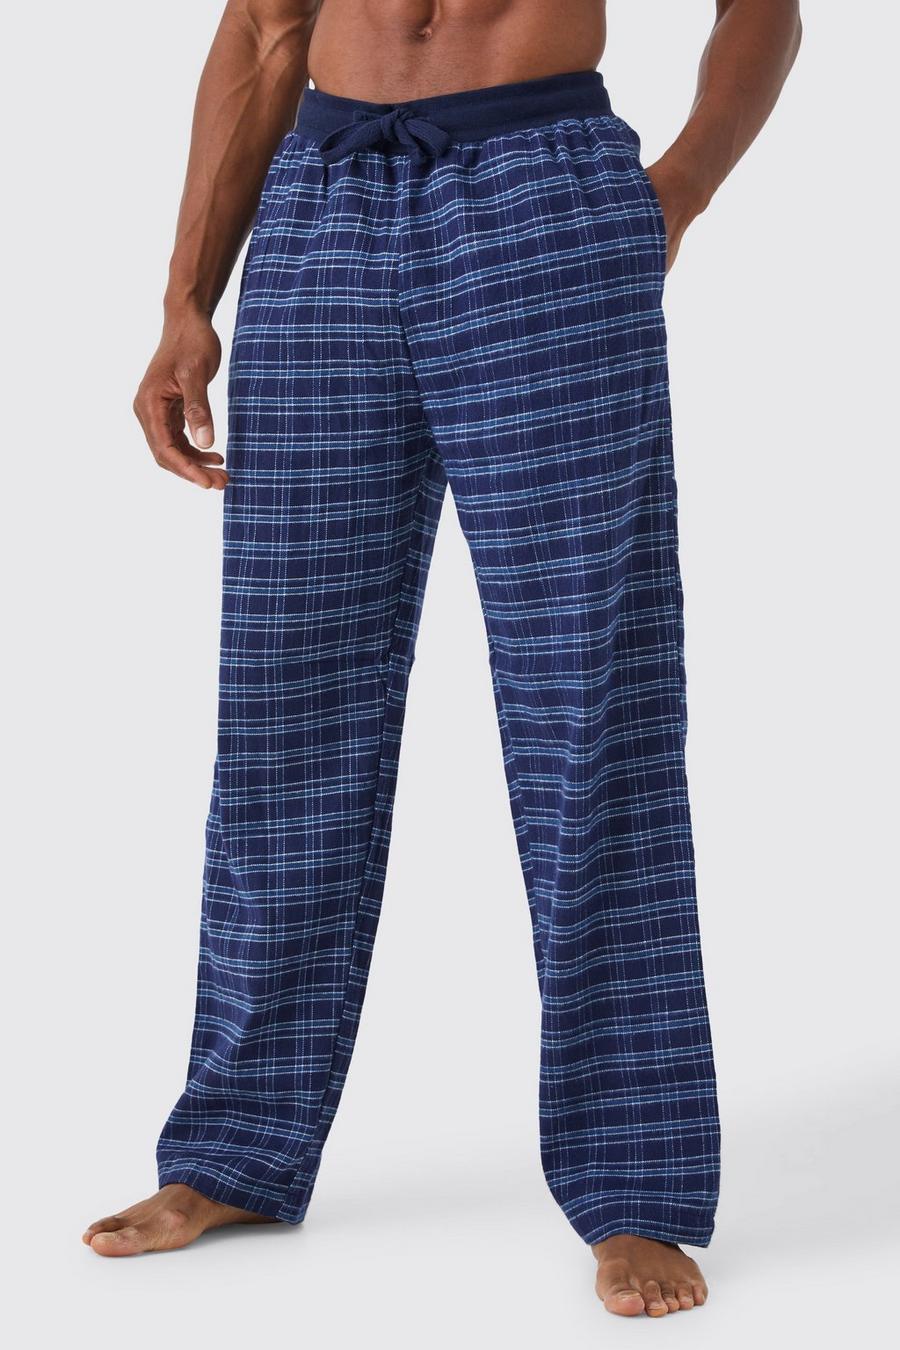 Pantalón pijama cuadros 100% algodón azul, Pijamas de mujer